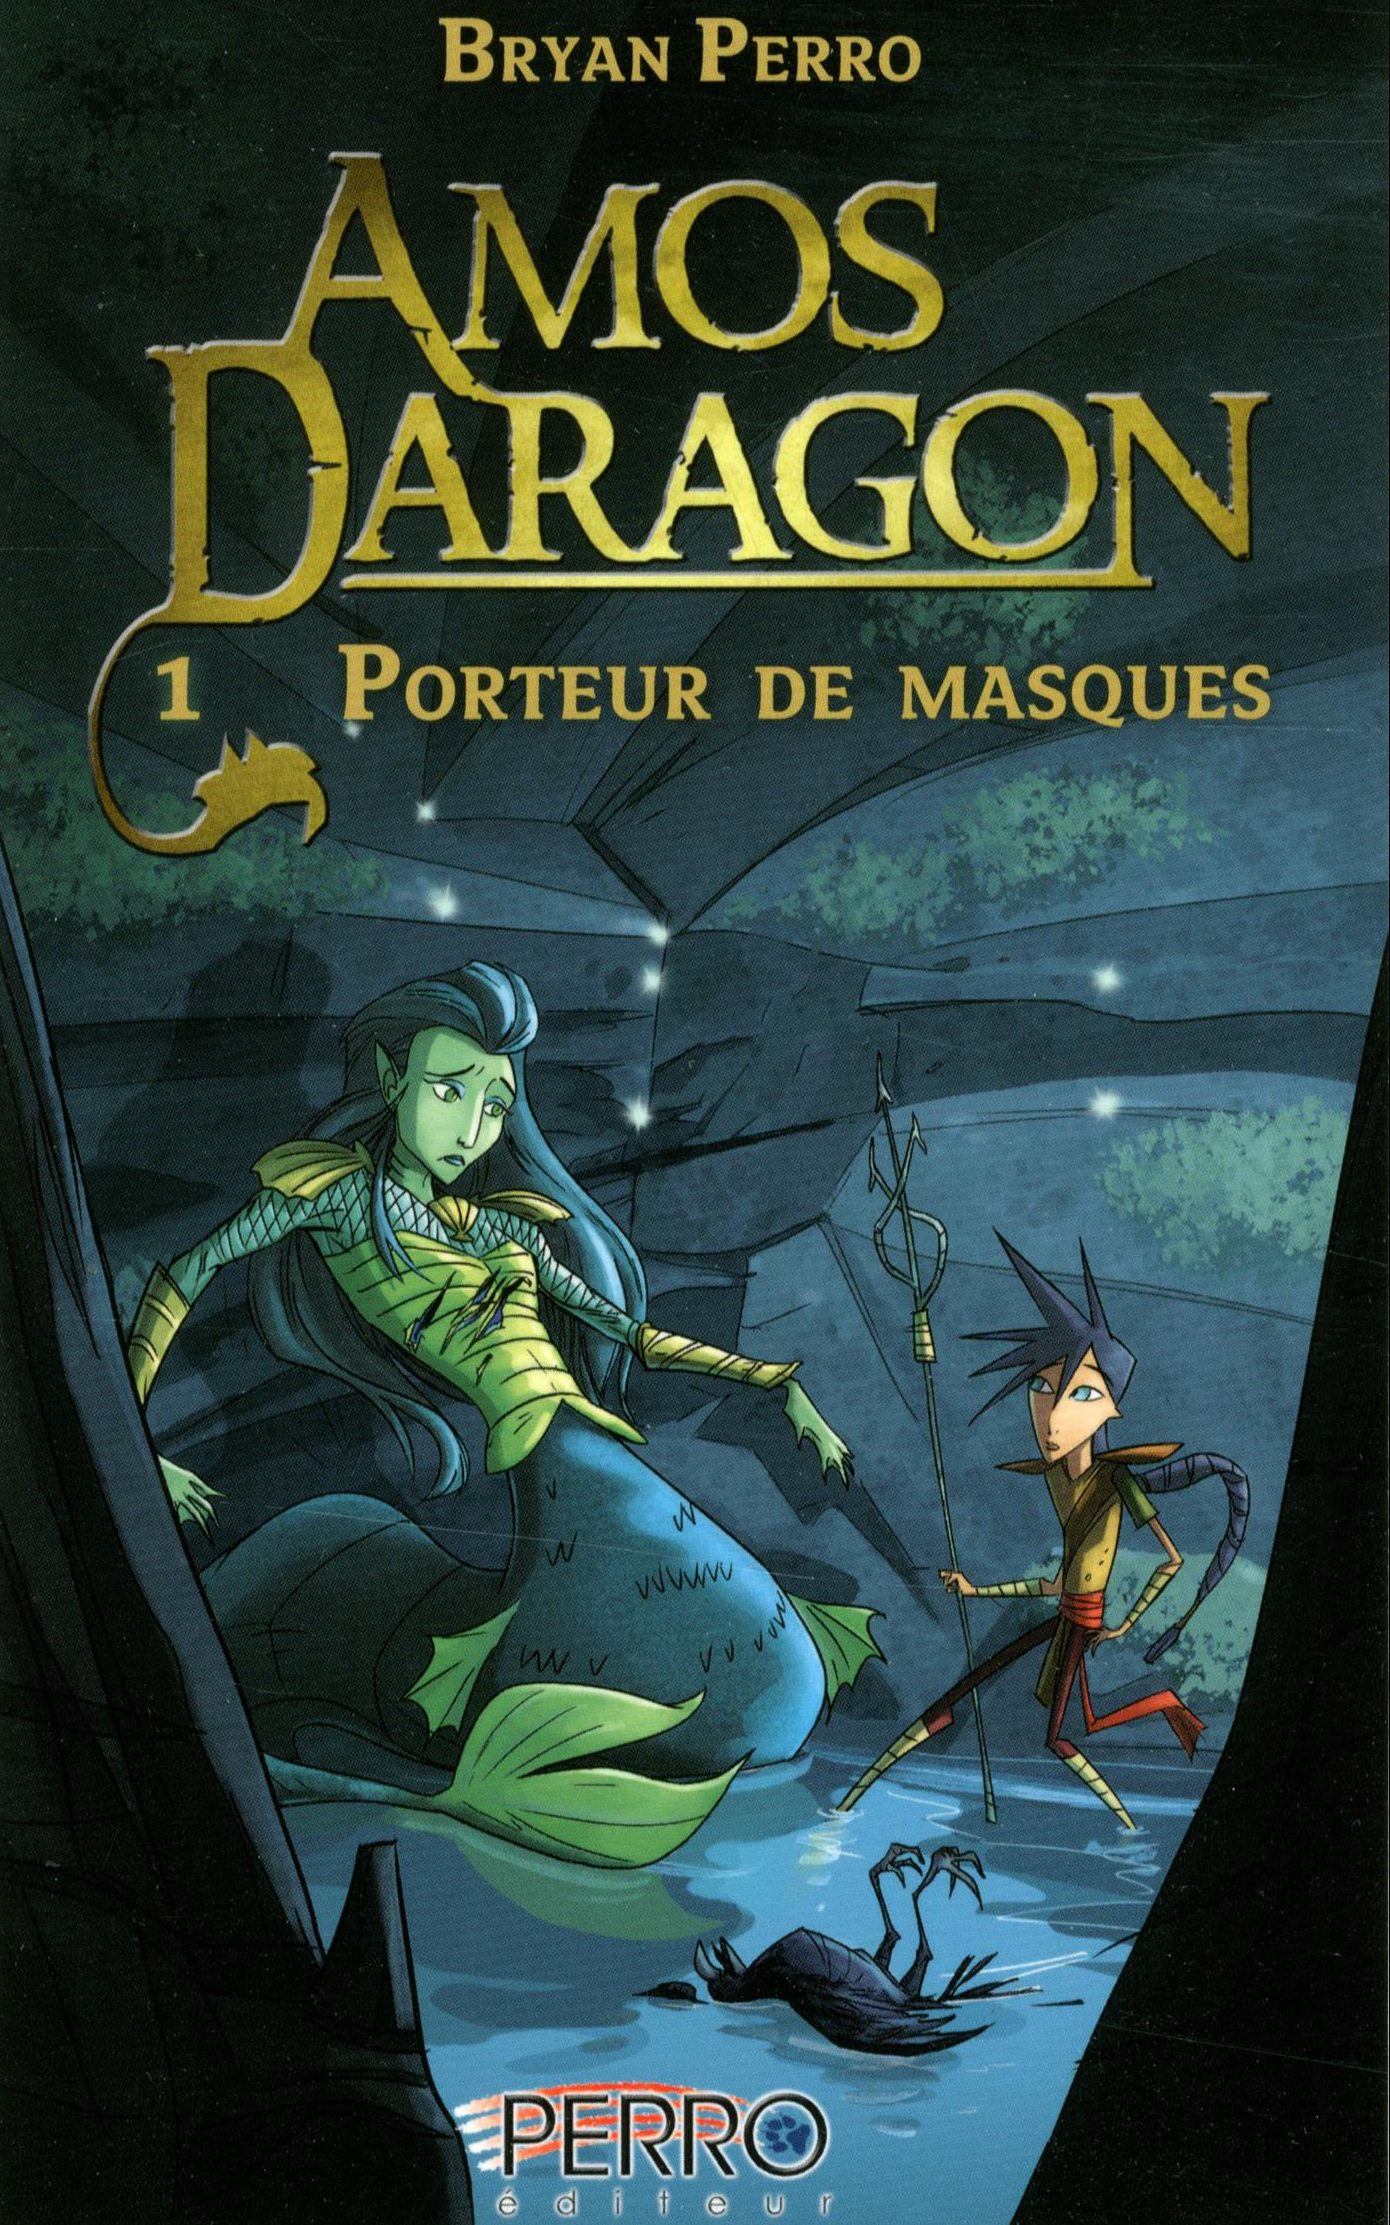 amos daragon book cover